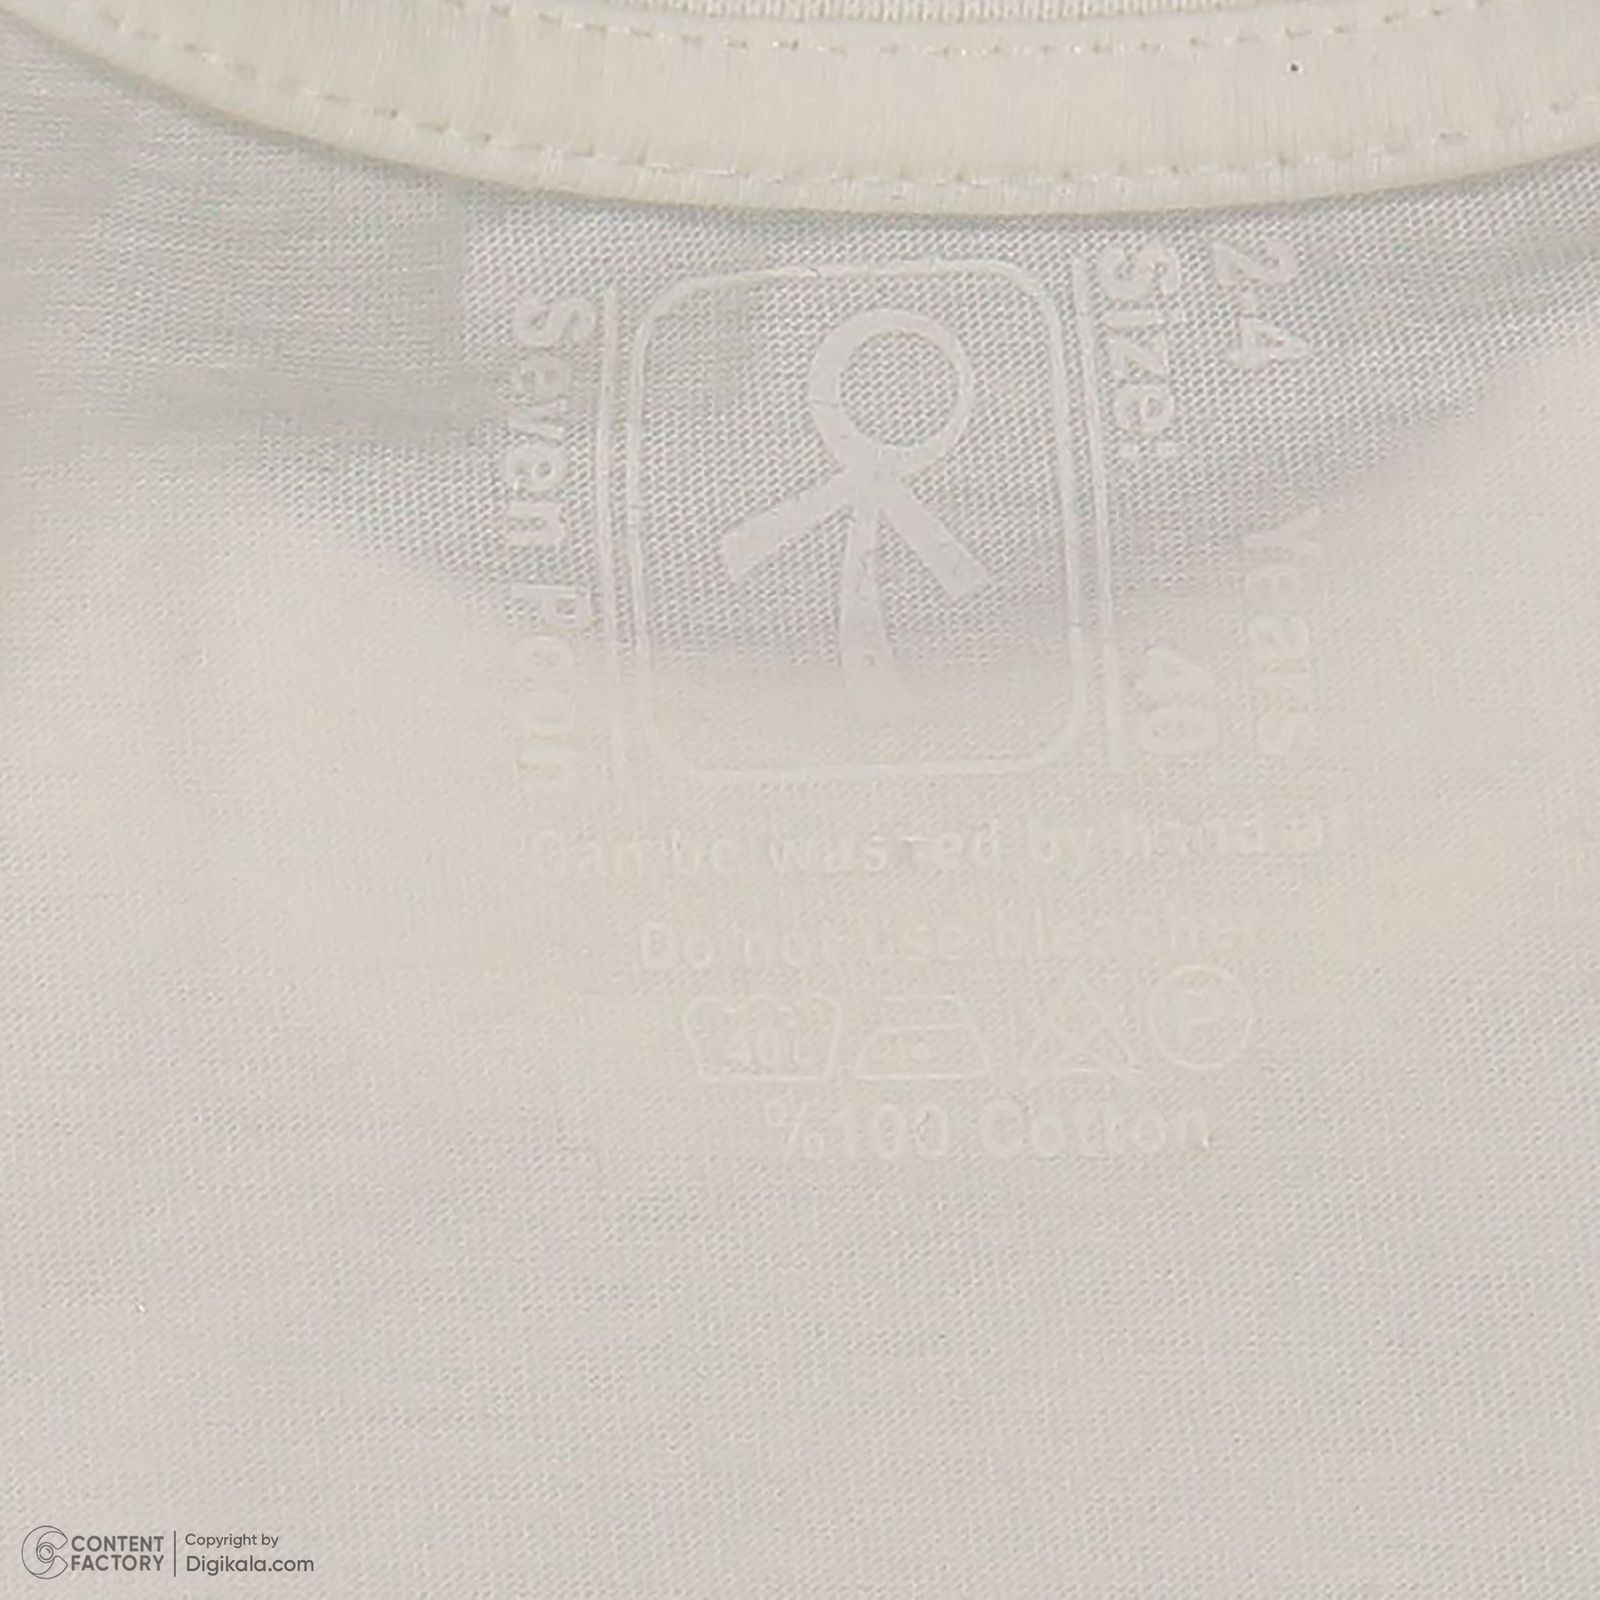 ست تی شرت آستین کوتاه و شلوارک پسرانه سون پون مدل 1098 رنگ سفید -  - 4